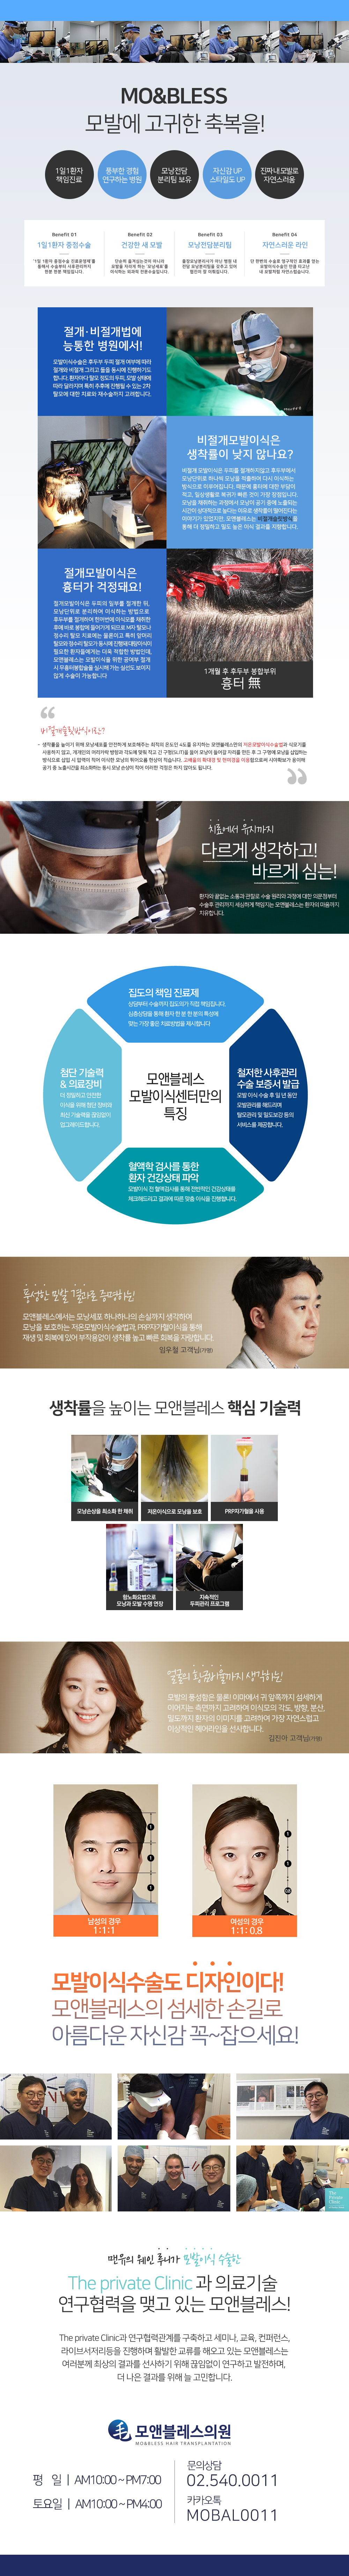 서울압구정비절개수술전문병원하루에한명만수술하는병원원장님과대화하는병원